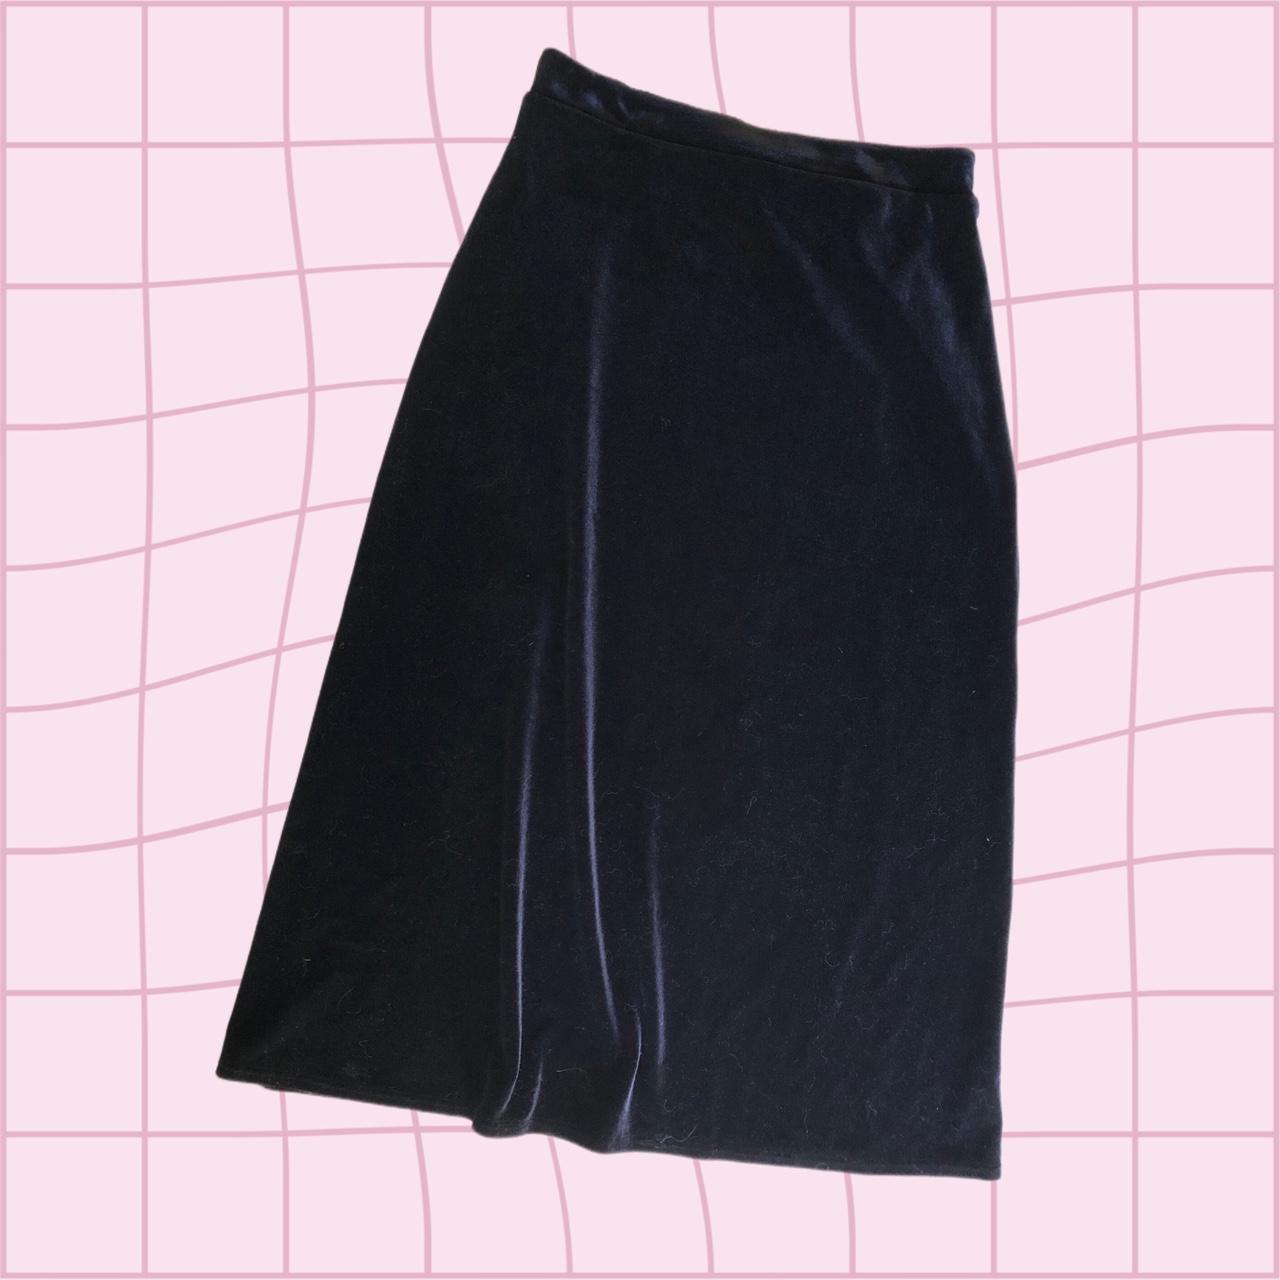 Velvet black maxi skirt. Size 12 - Depop